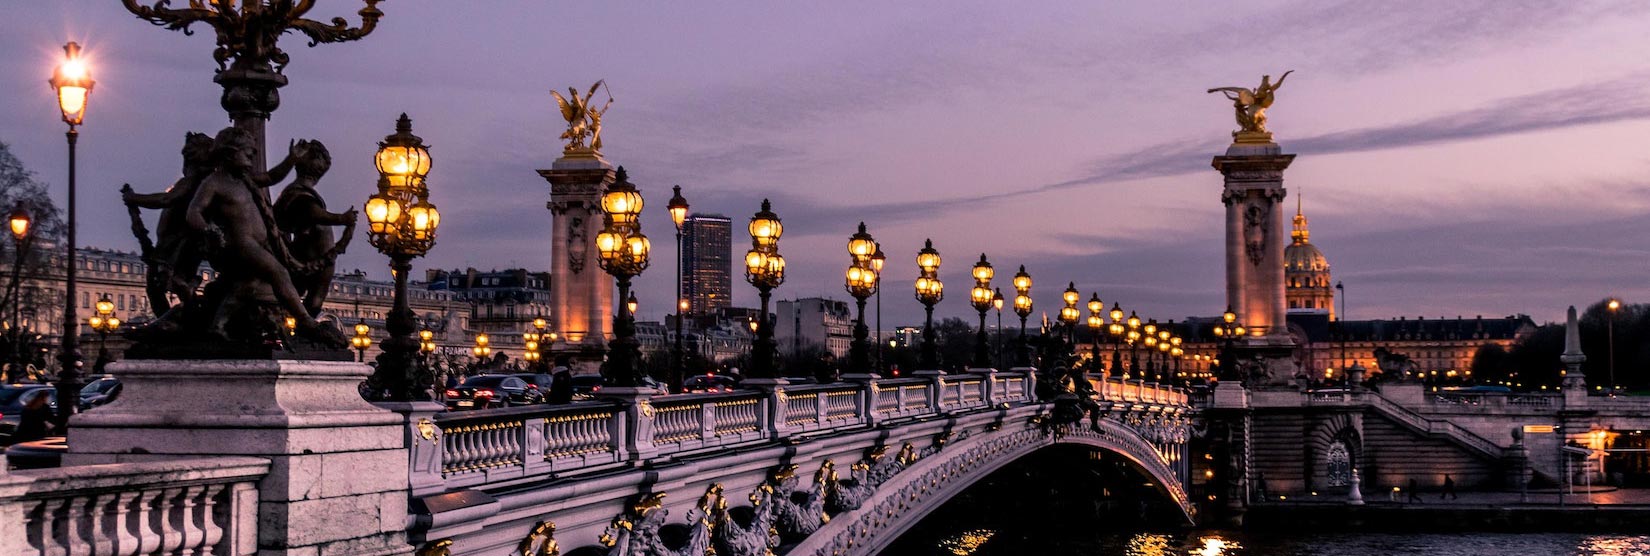 Мост Понт Александра III Париж, Франция